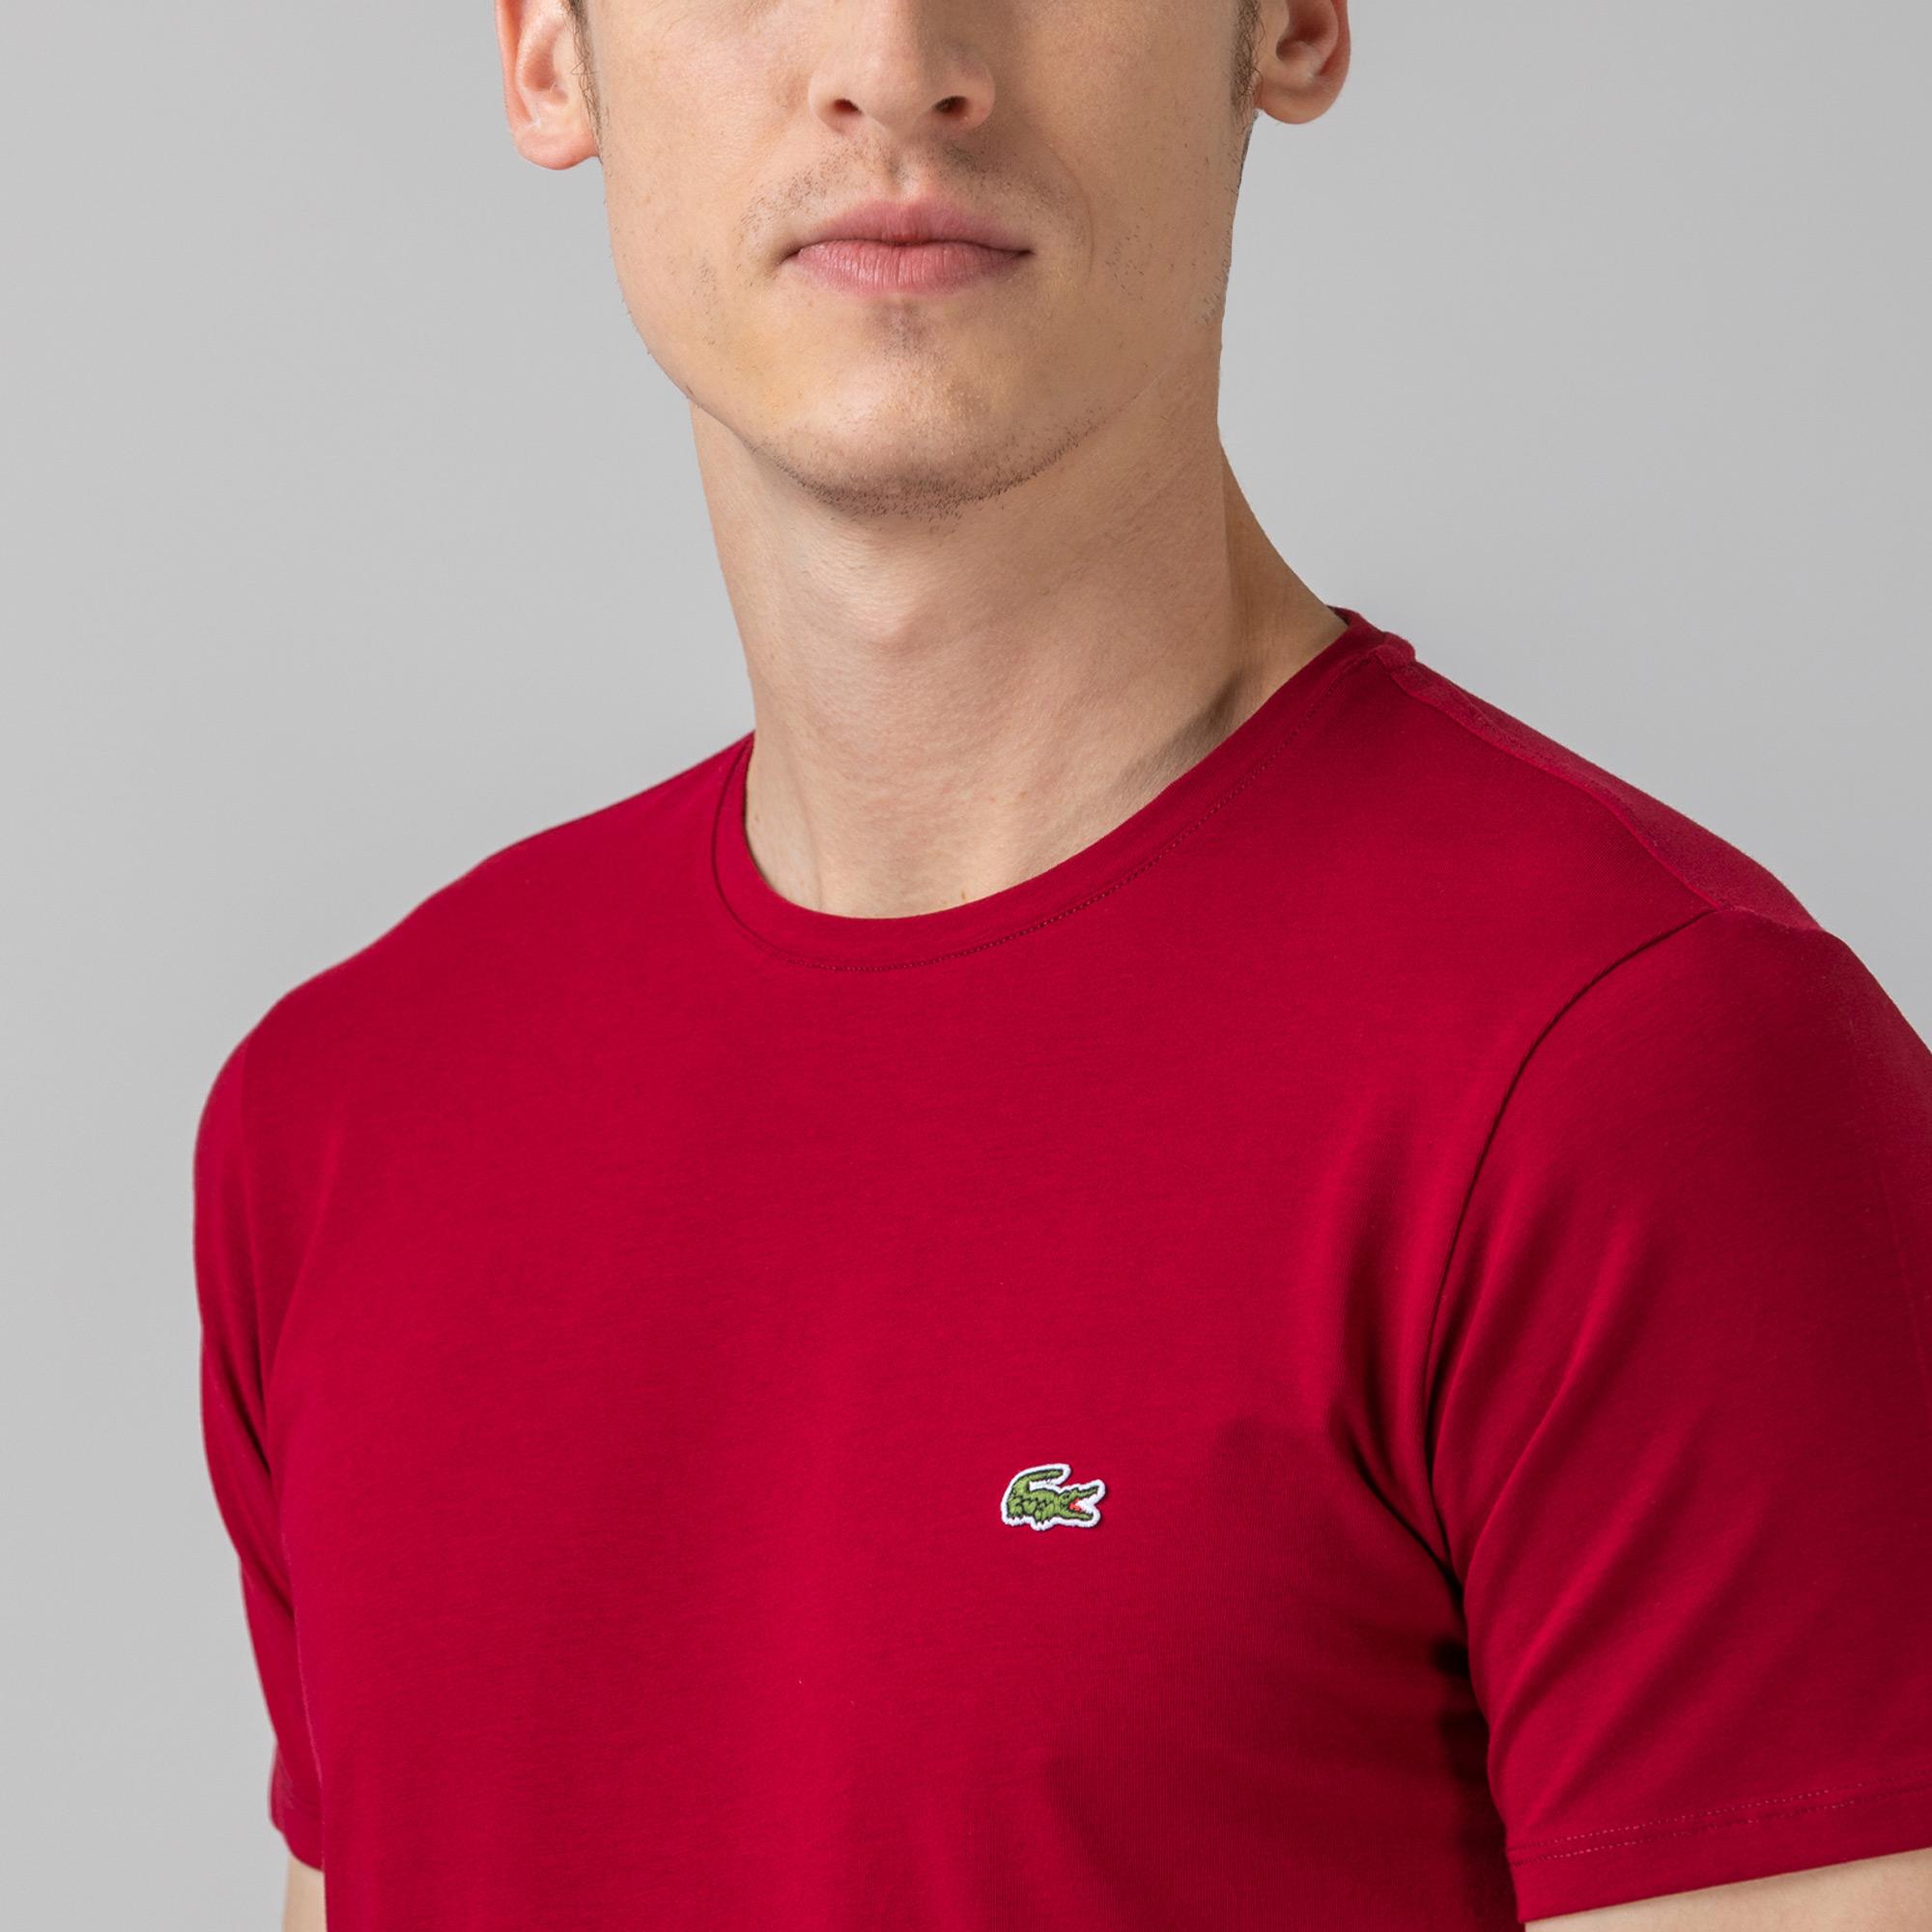 Lacoste Men's T-shirt